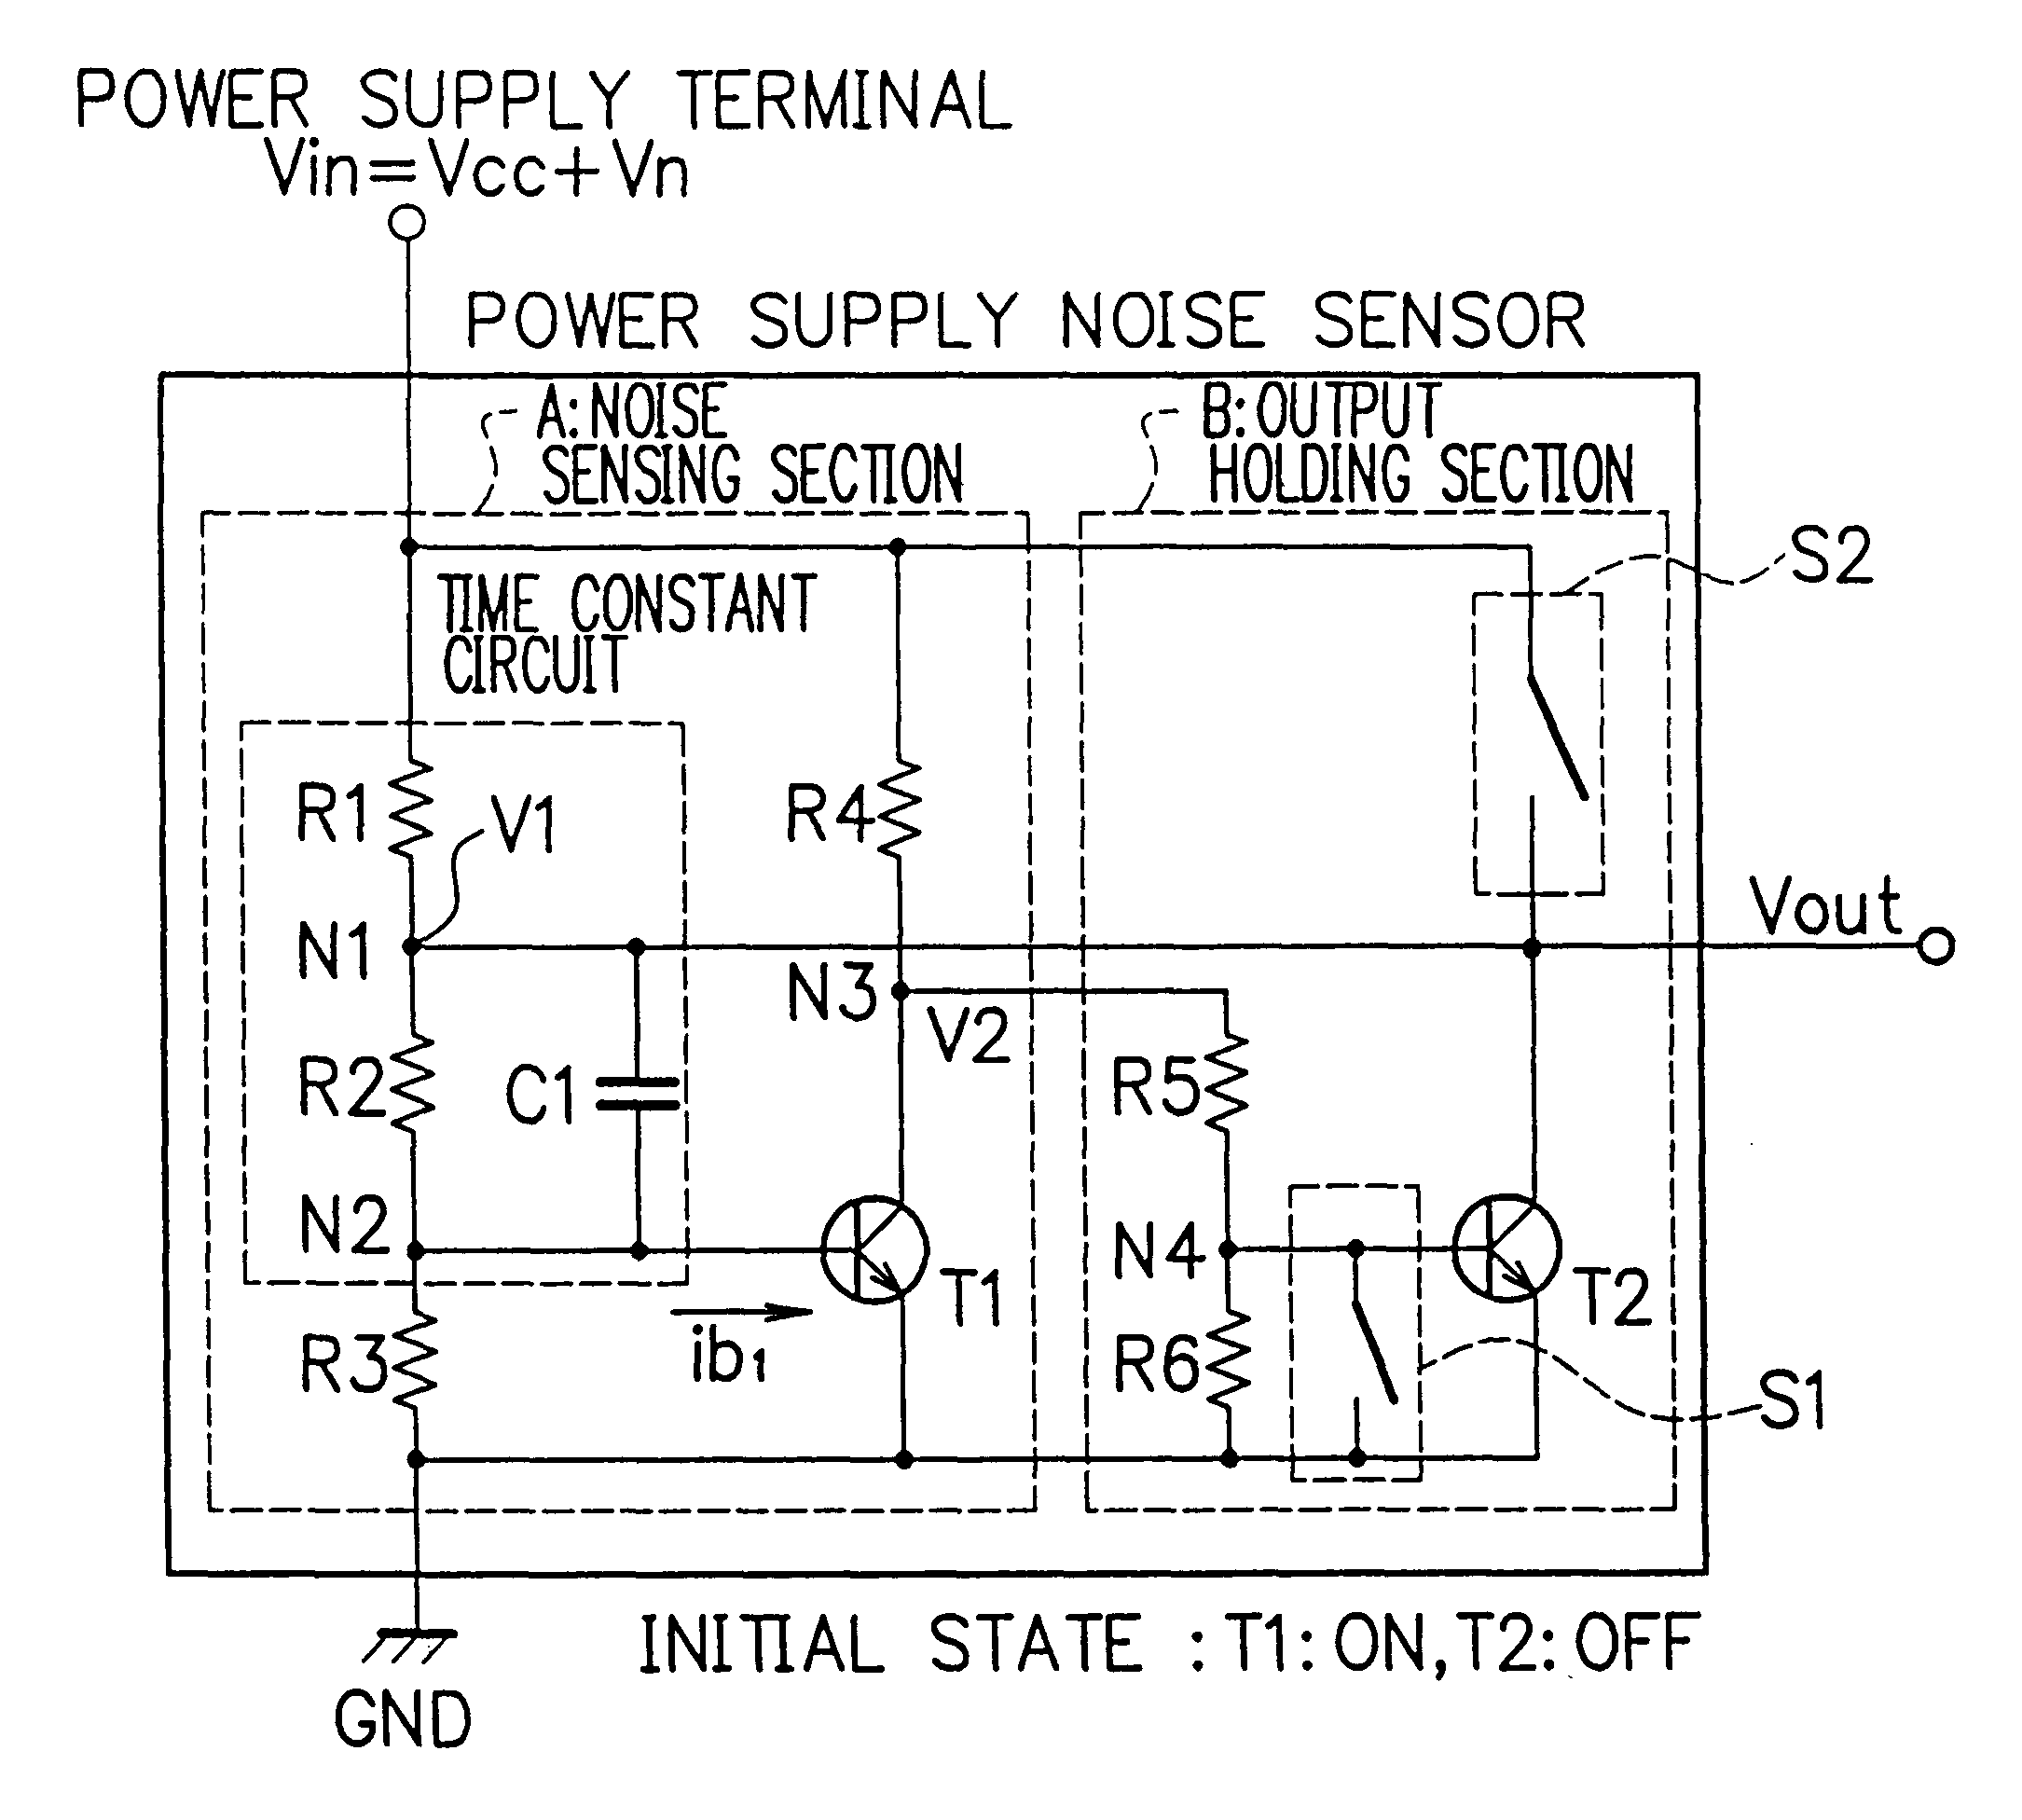 Power supply noise sensor